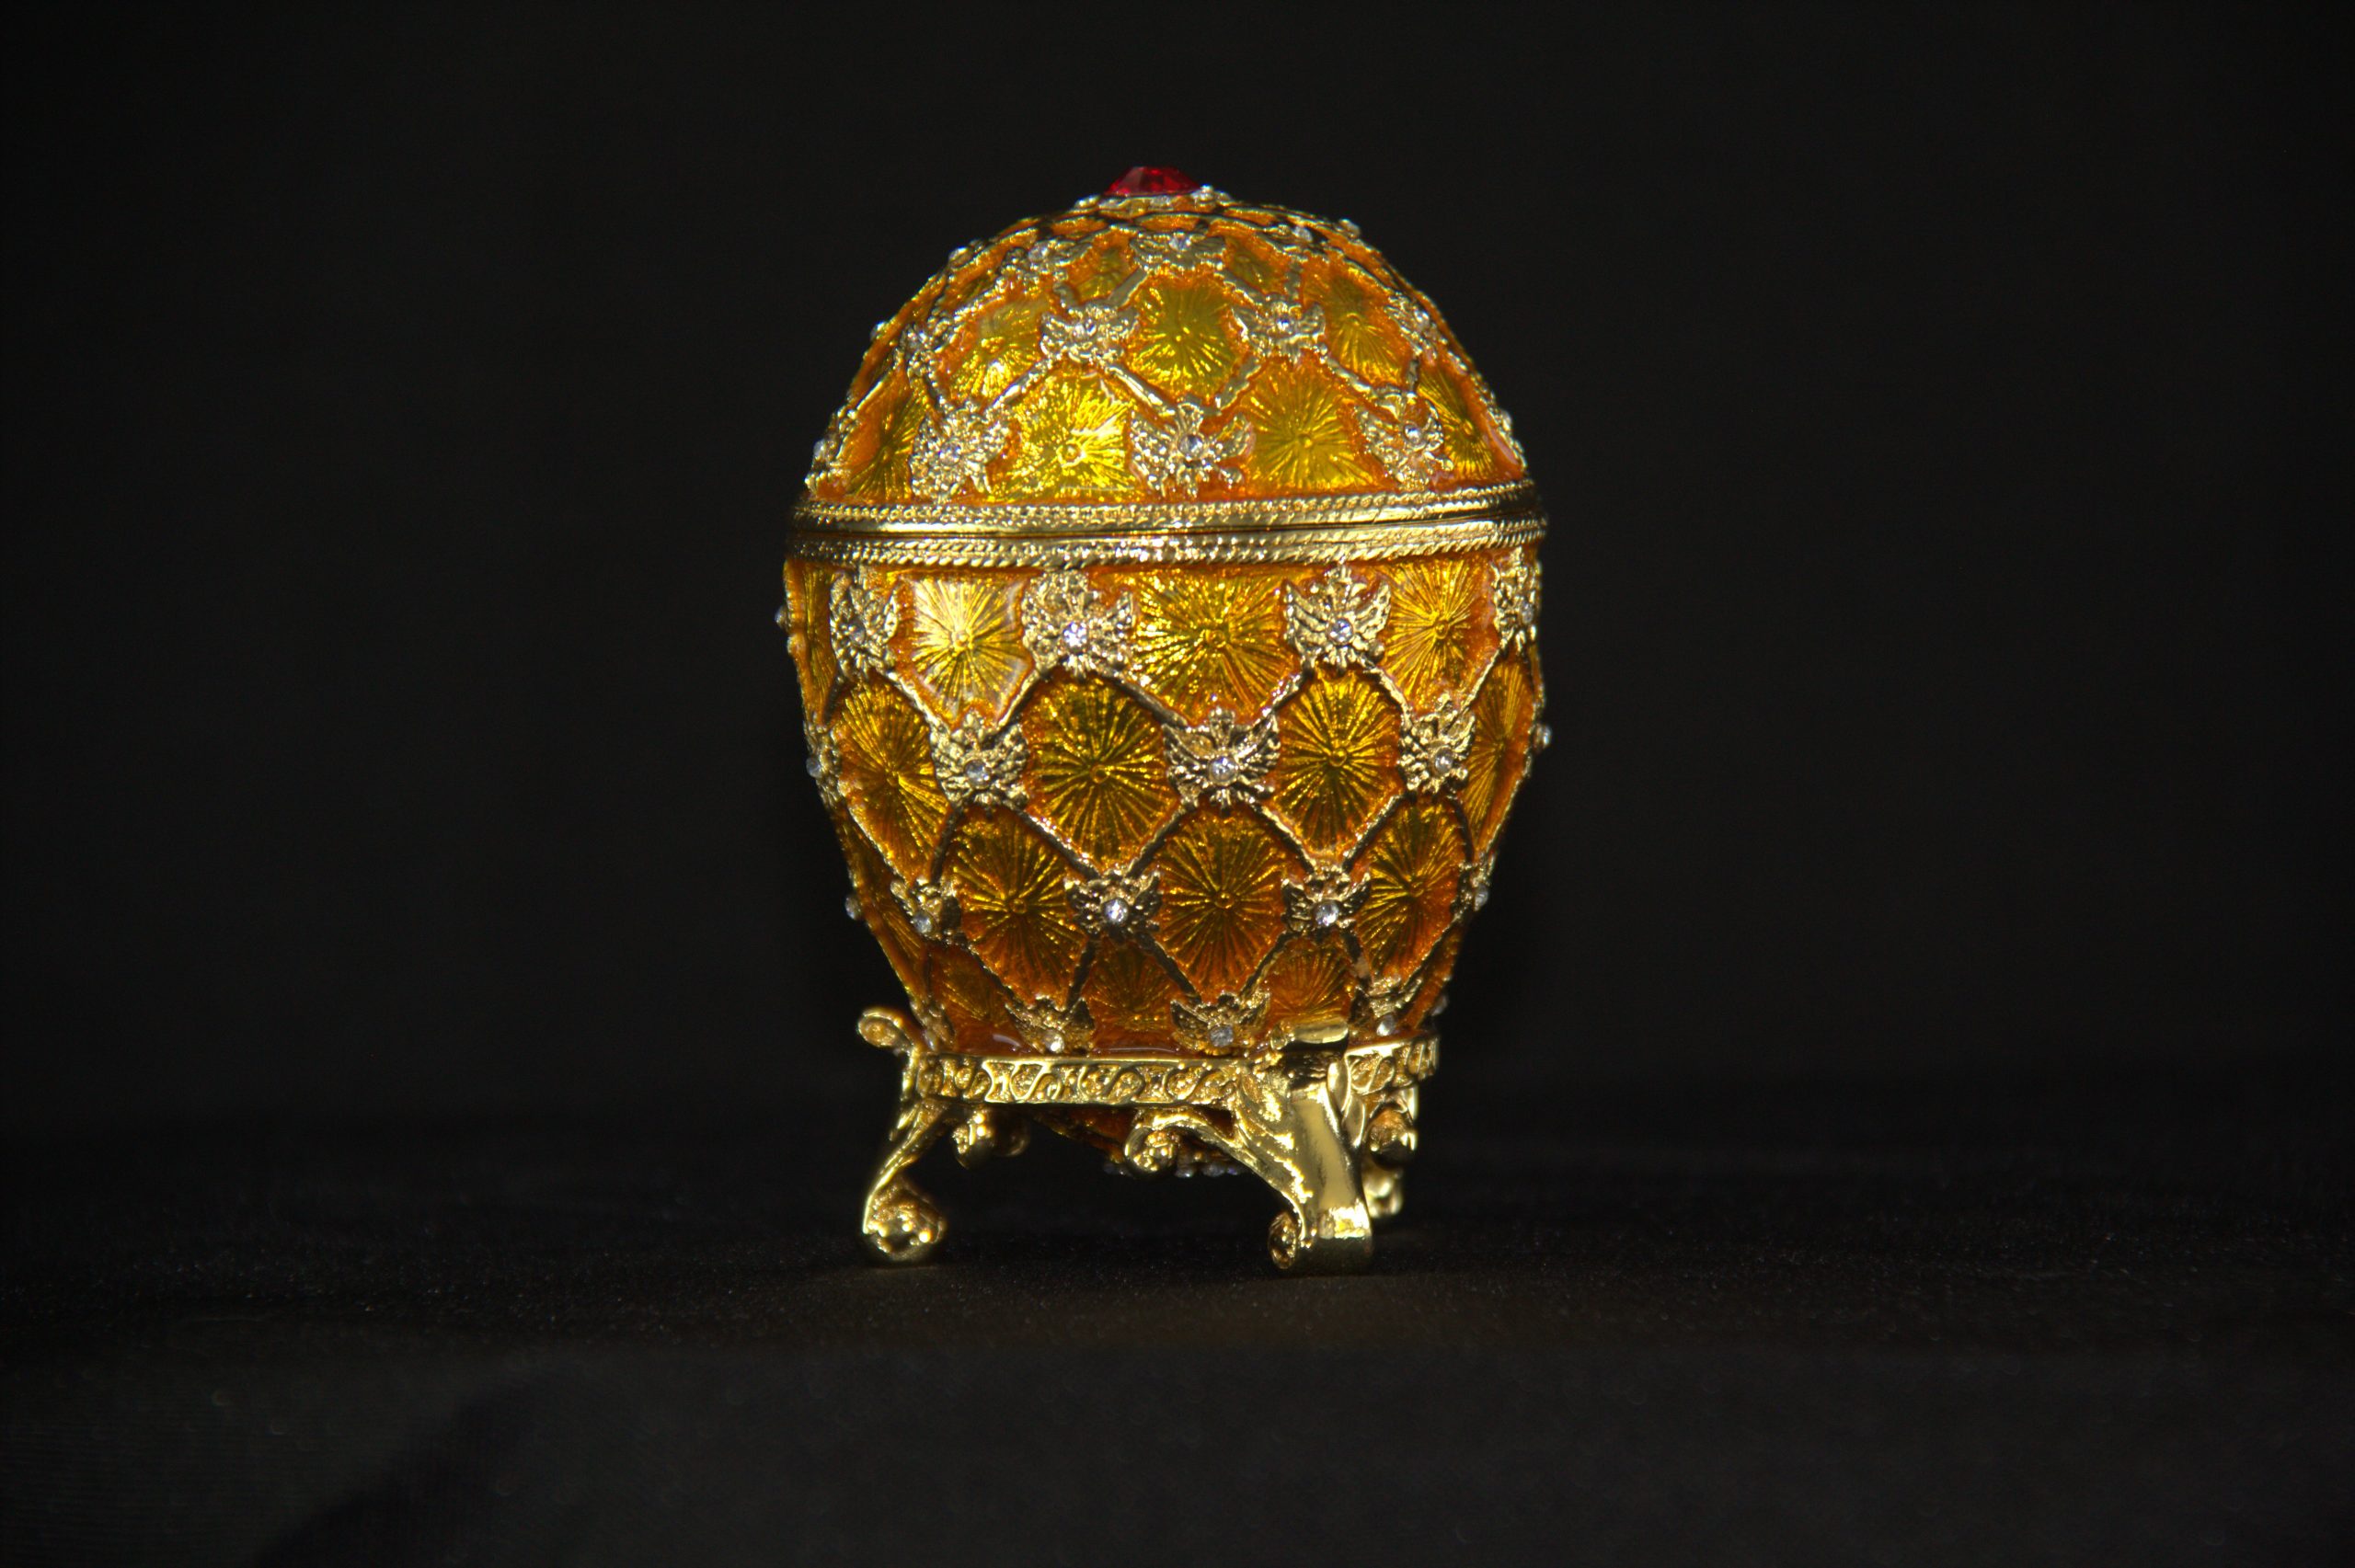 golden Coronation egg replica